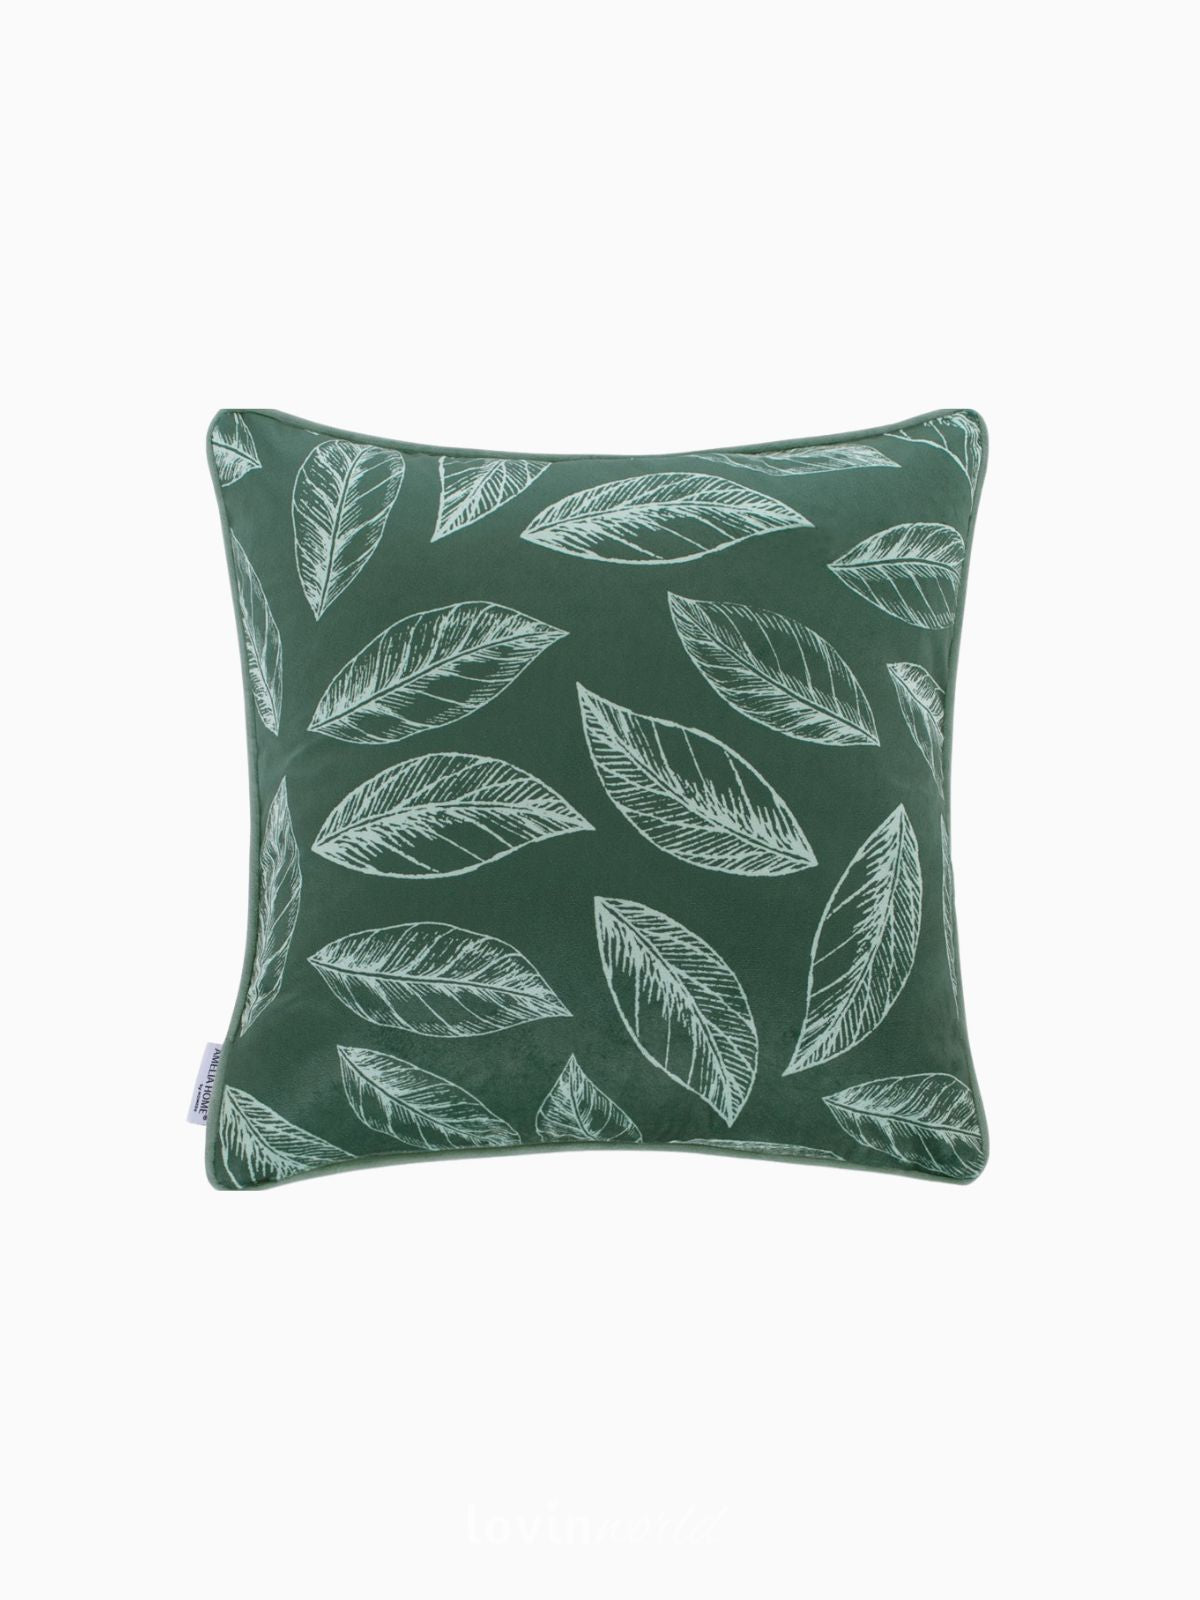 Cuscino decorativo in velluto Calm, colore verde 45x45 cm.-1